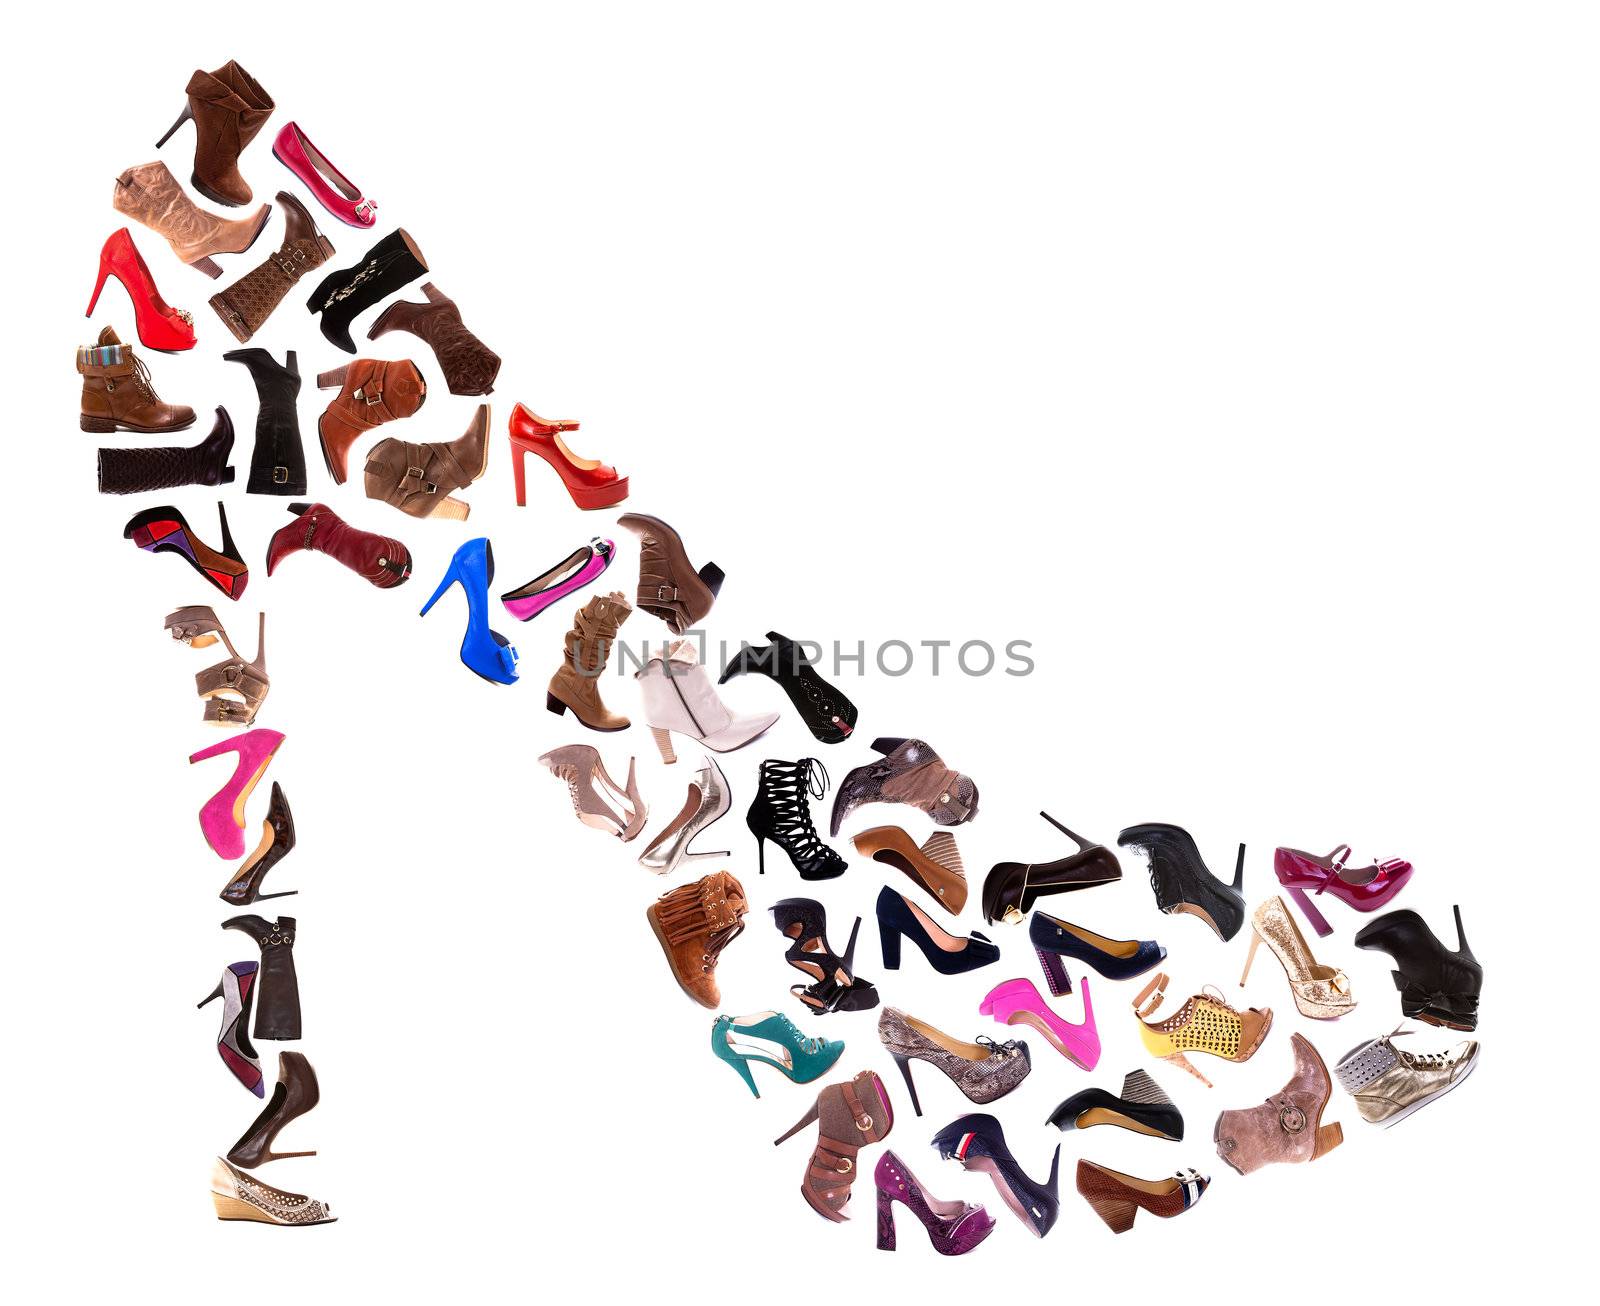 Ladies Shoes Collage by Daniel_Wiedemann